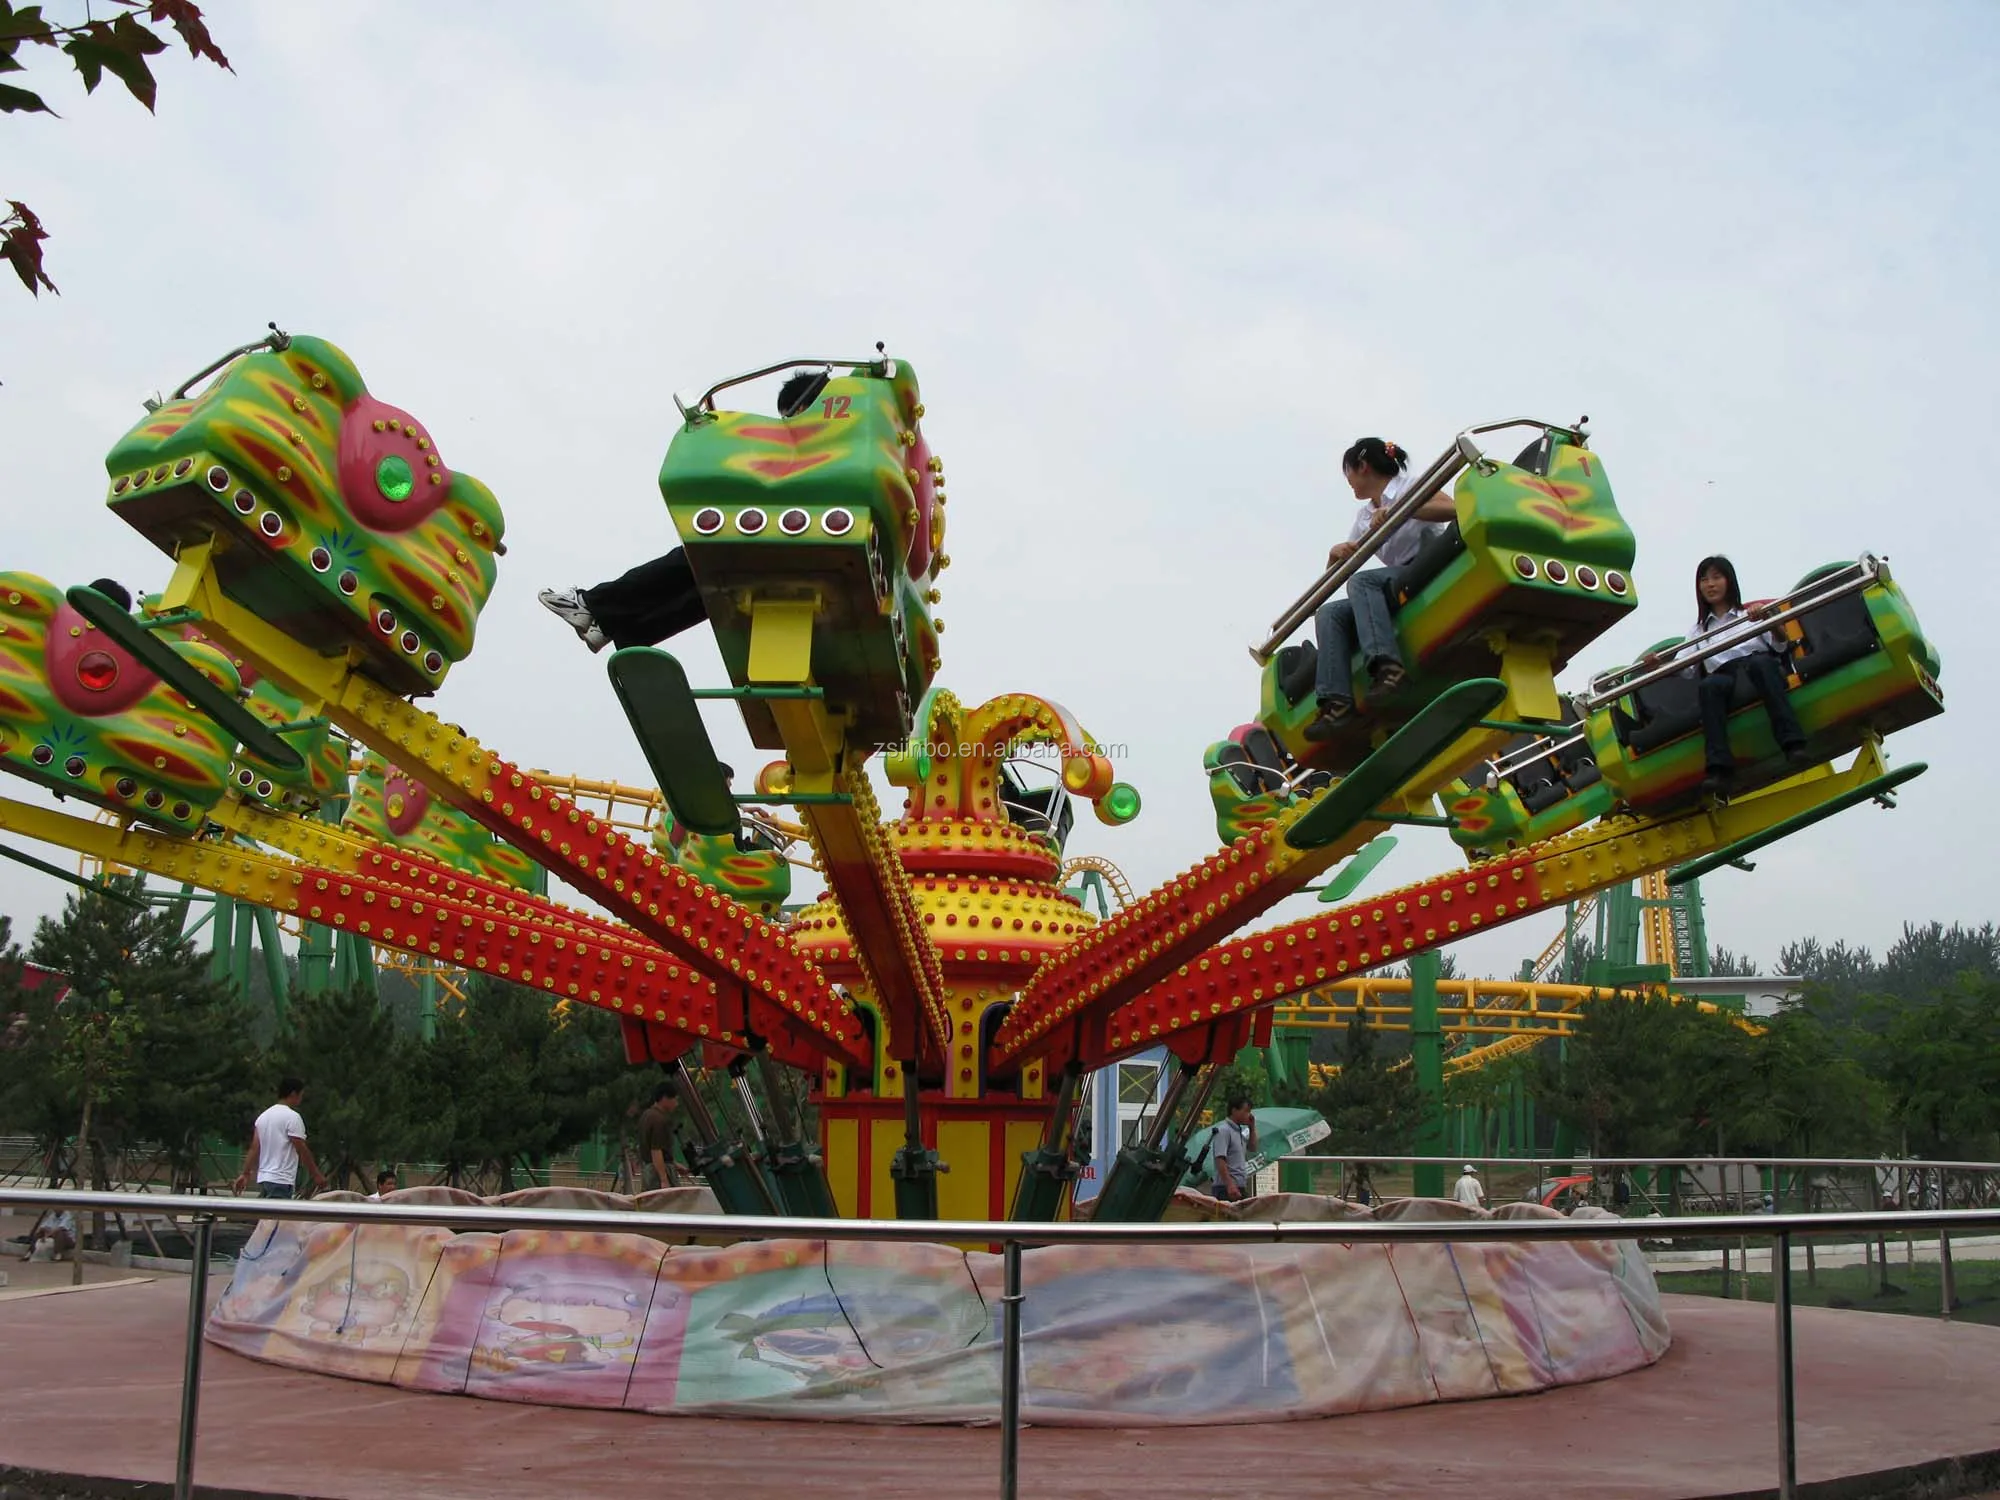 passion jump, amusement park rides 36 seats crazy